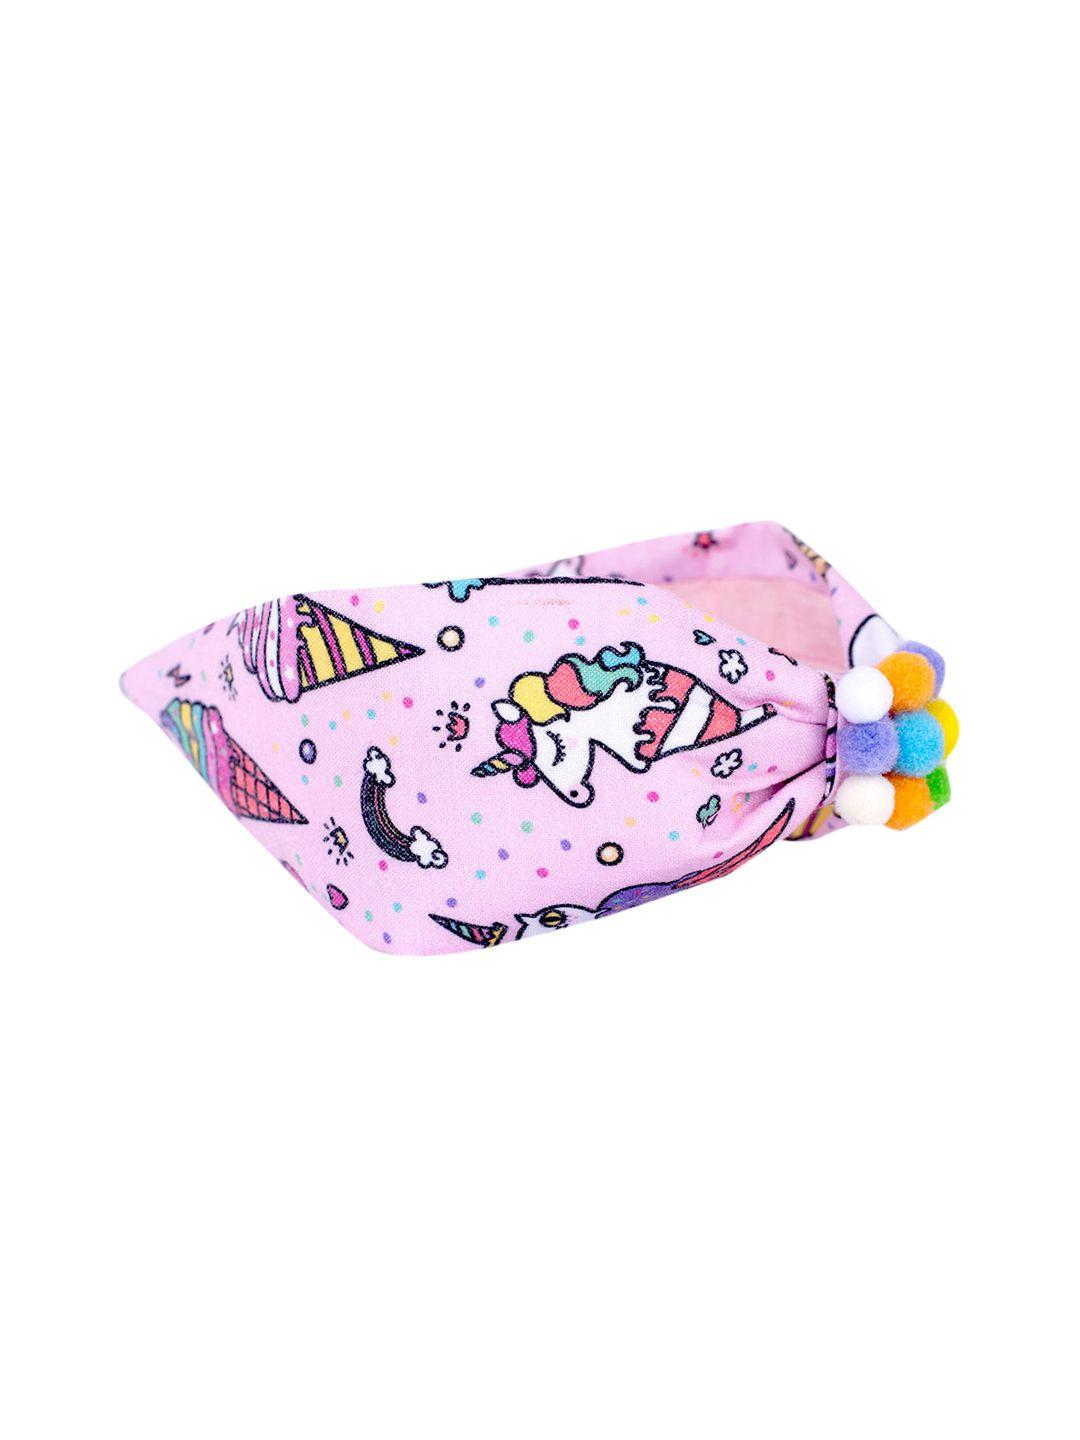 choko girls pink & white printed headband